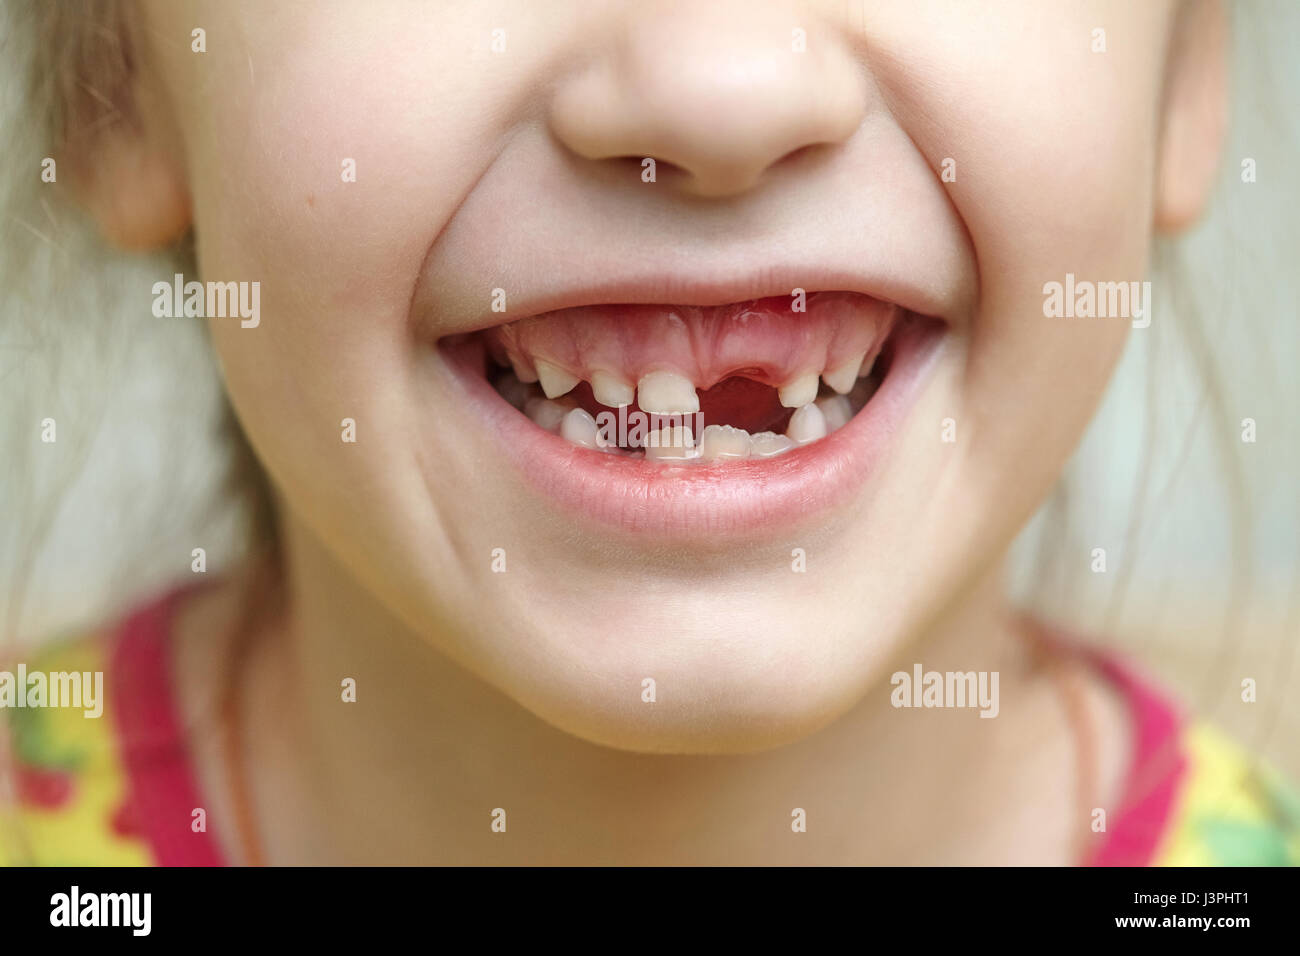 Ребенок без молочных зубов. Беззубая детская улыбка.